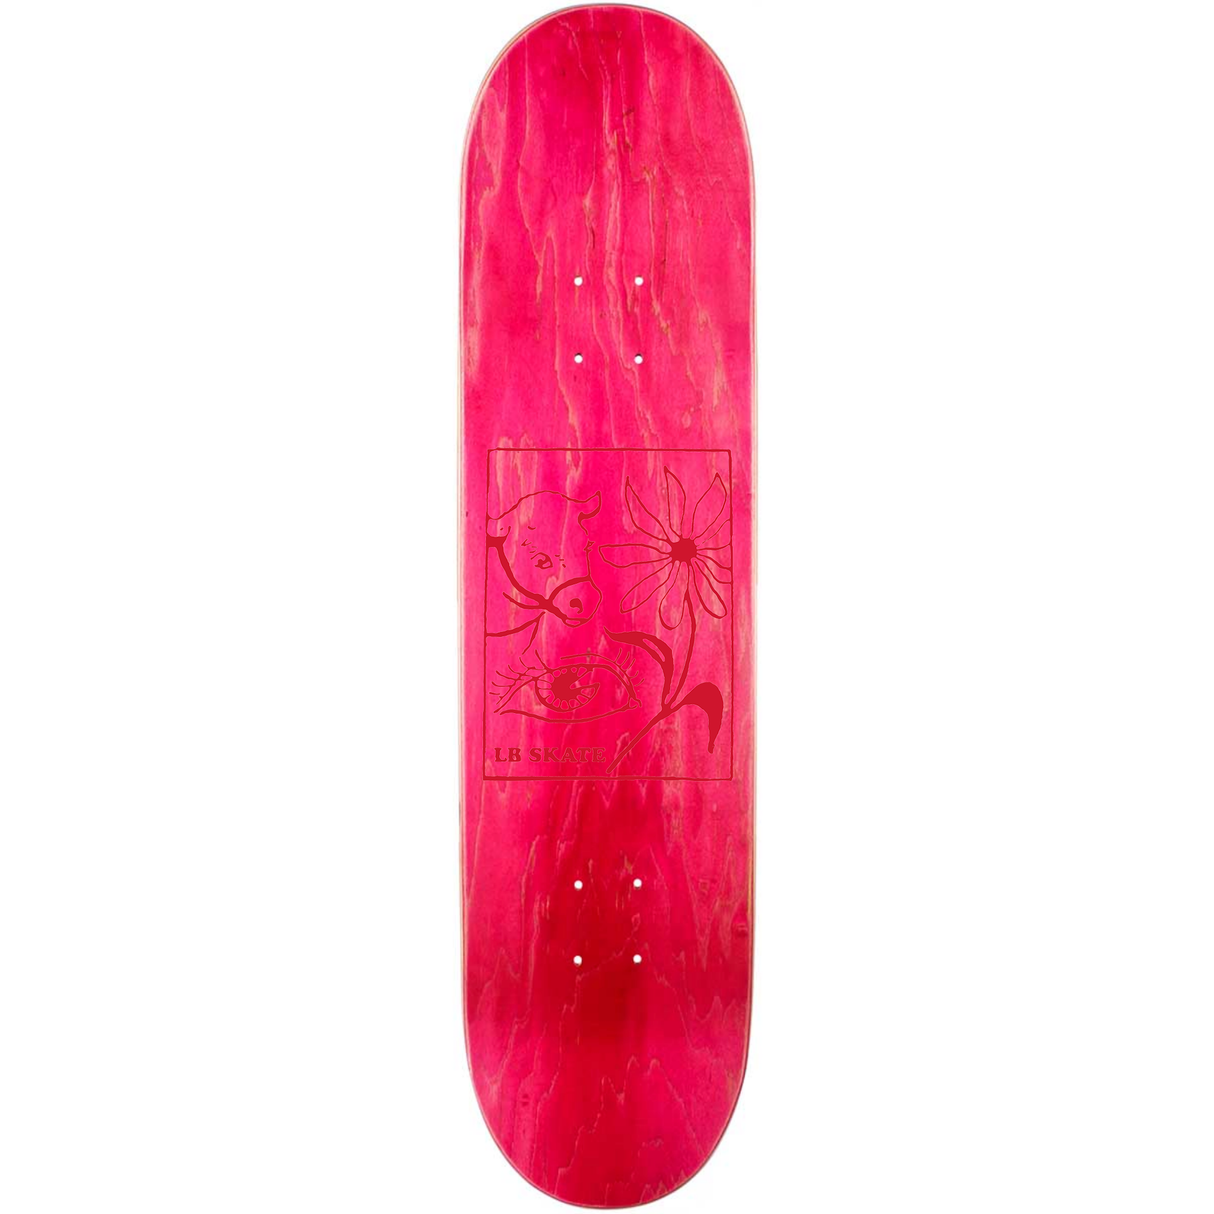 Long Beach Skate Co. "Randomness" 8.25" Pink Stain Skateboard Deck